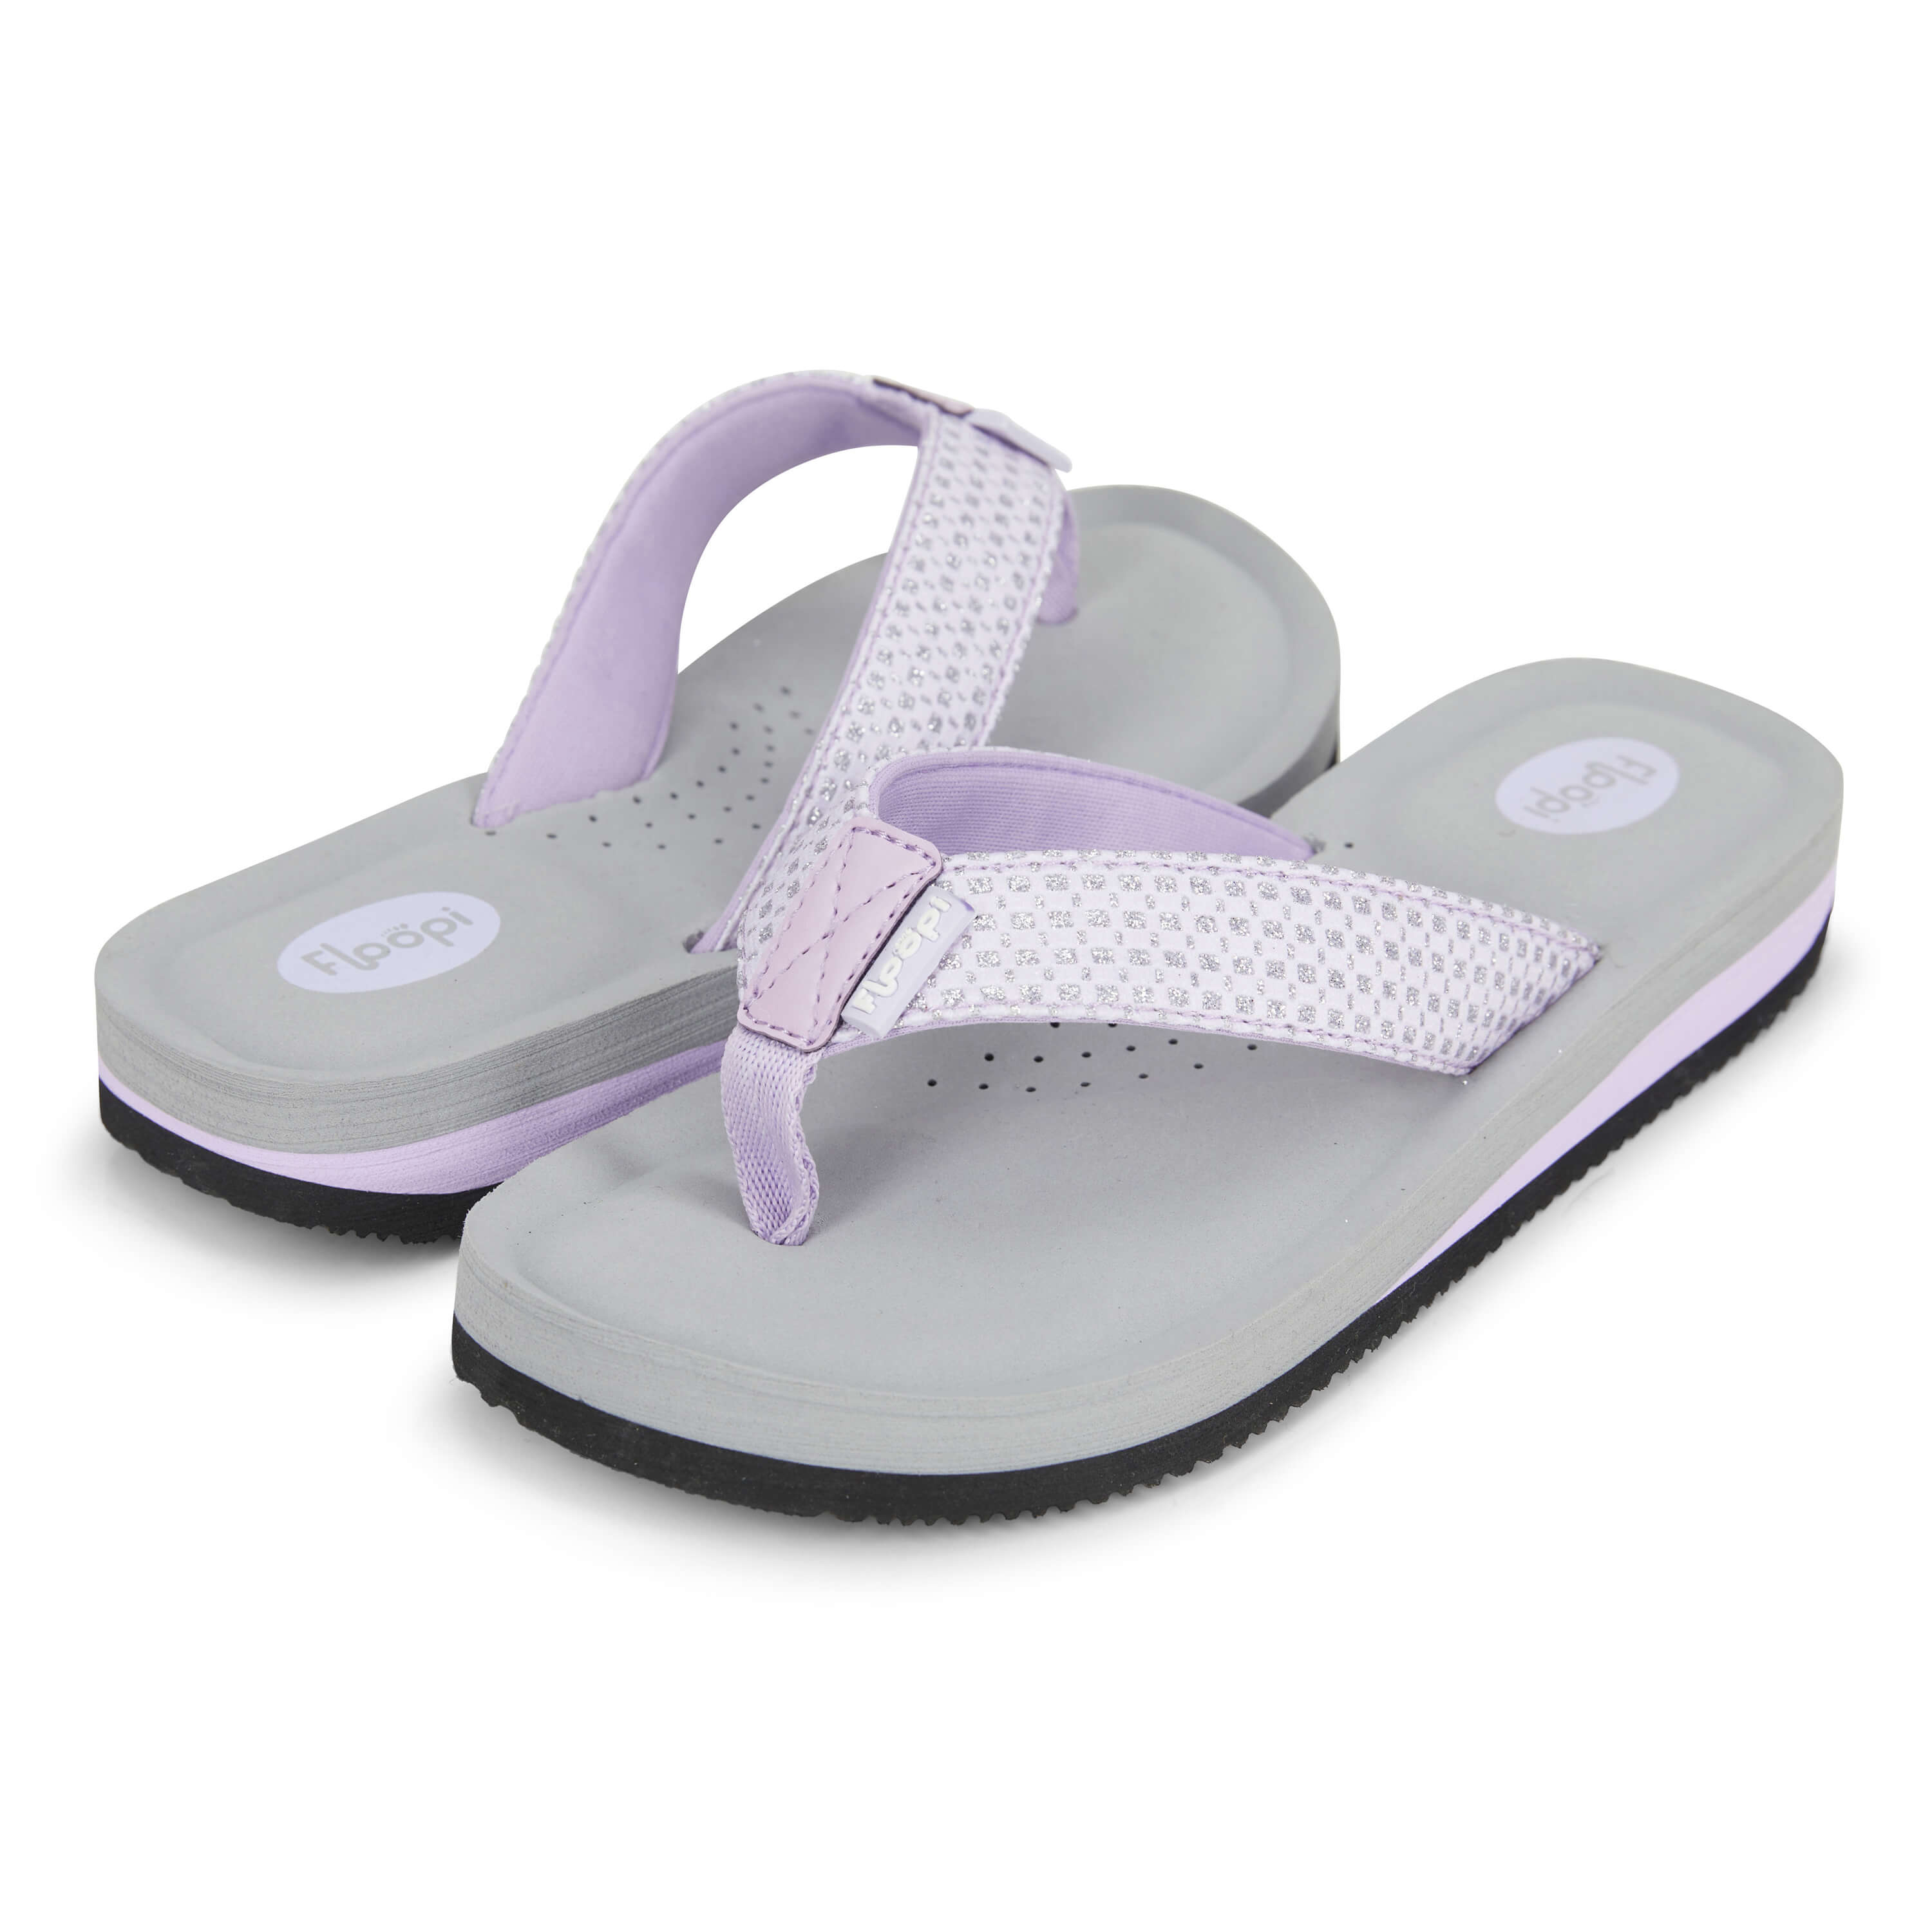 Fsqjgq Beach Sandals Women Arch Support Sandals Women's Summer ...